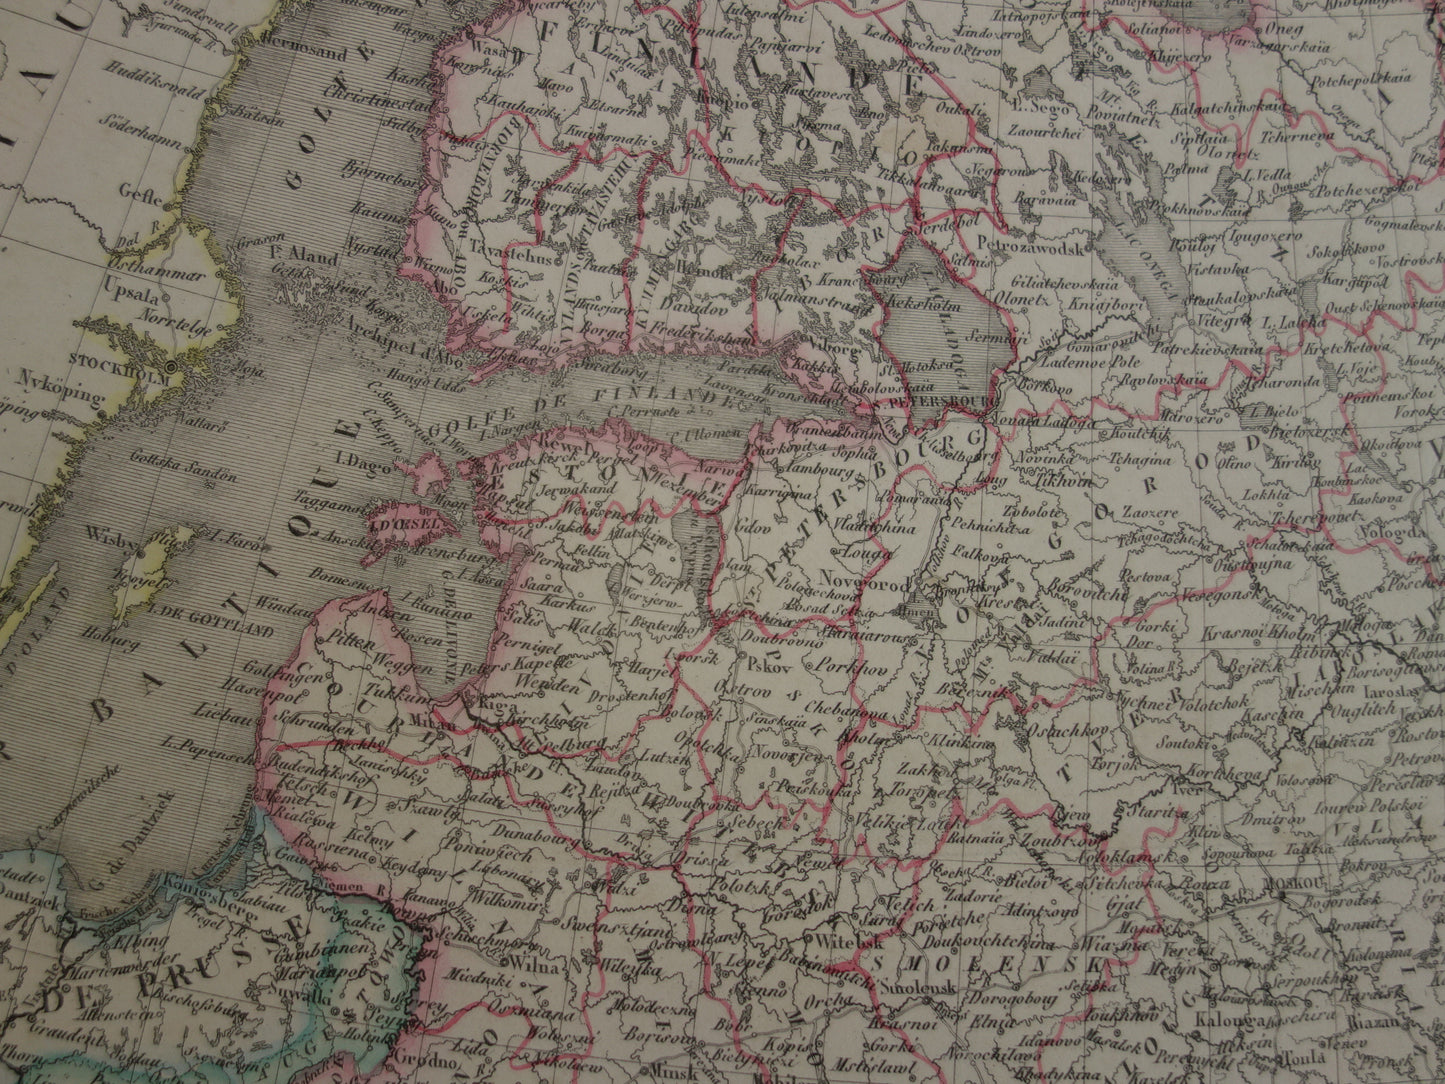 Oude kaart van Europees Rusland uit 1851 originele grote antieke Franse landkaart Russische Rijk in Europa